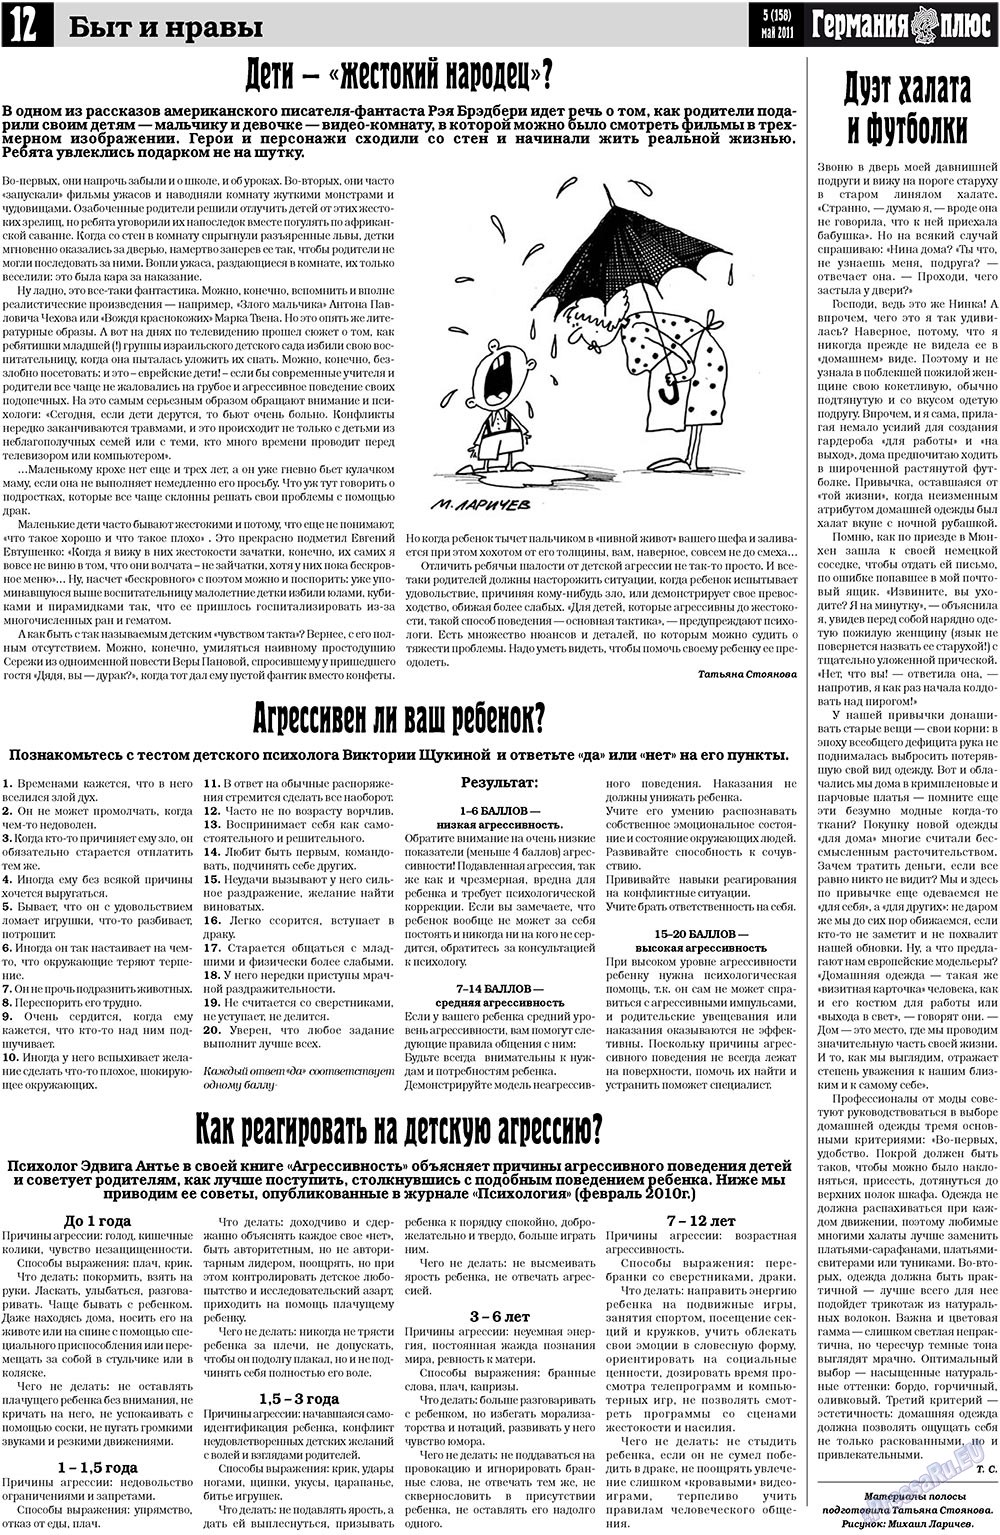 Германия плюс (газета). 2011 год, номер 5, стр. 12